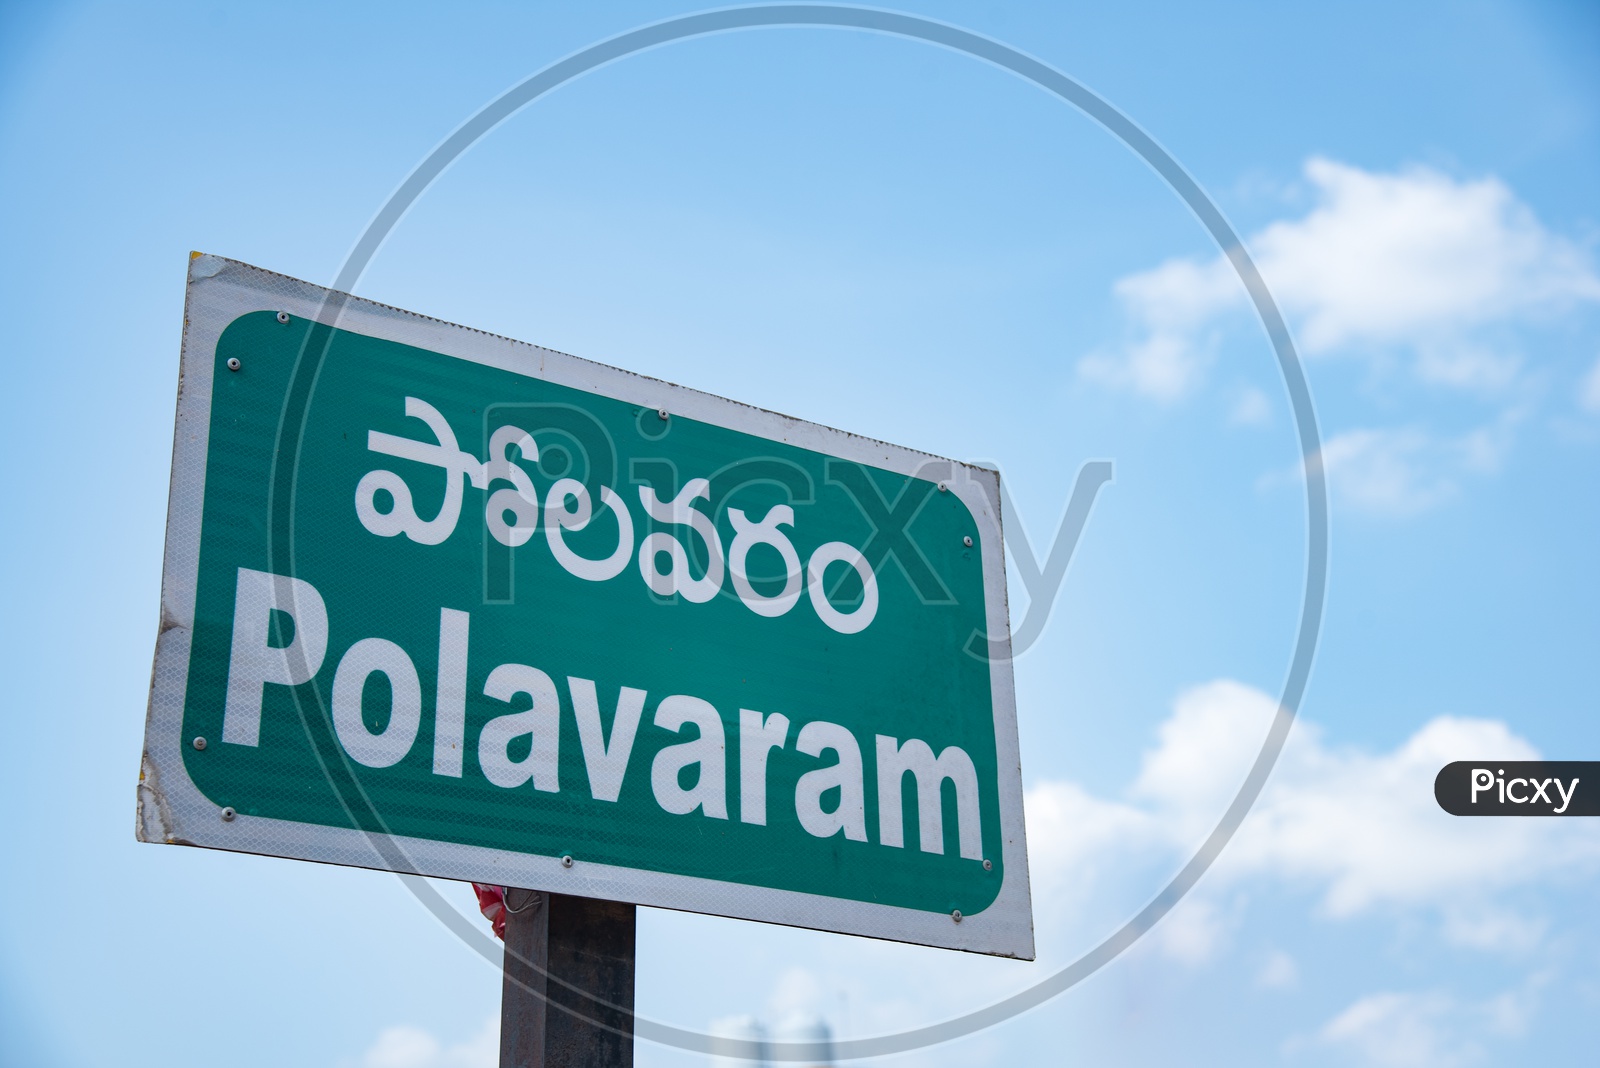 Polavaram Village name board